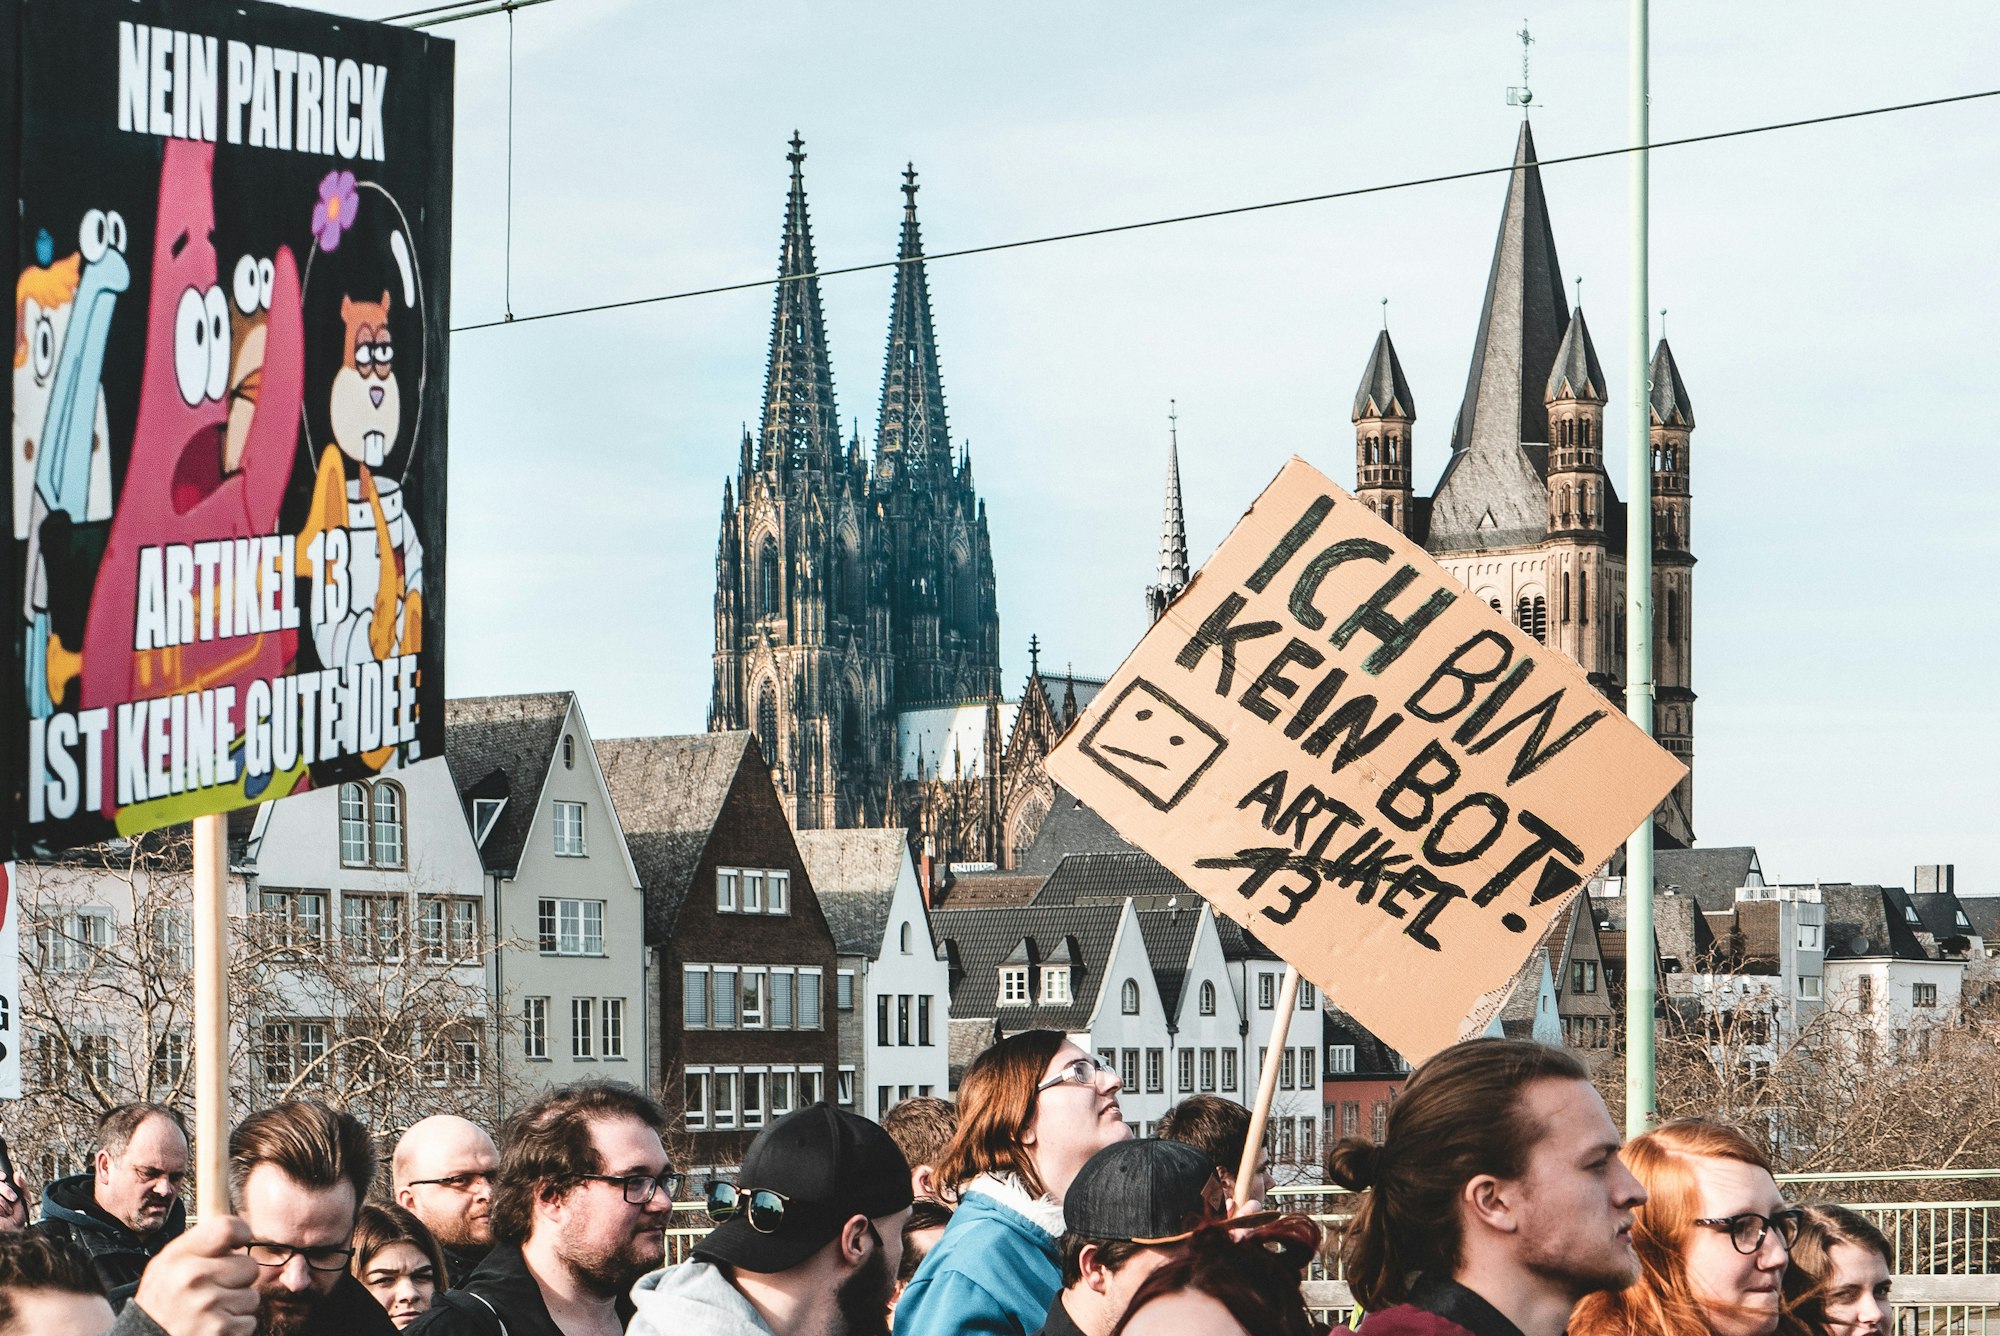 Protest gegen die EU-Zensurpläne am 2. März in Berlin: Artikel 13 verhindern!